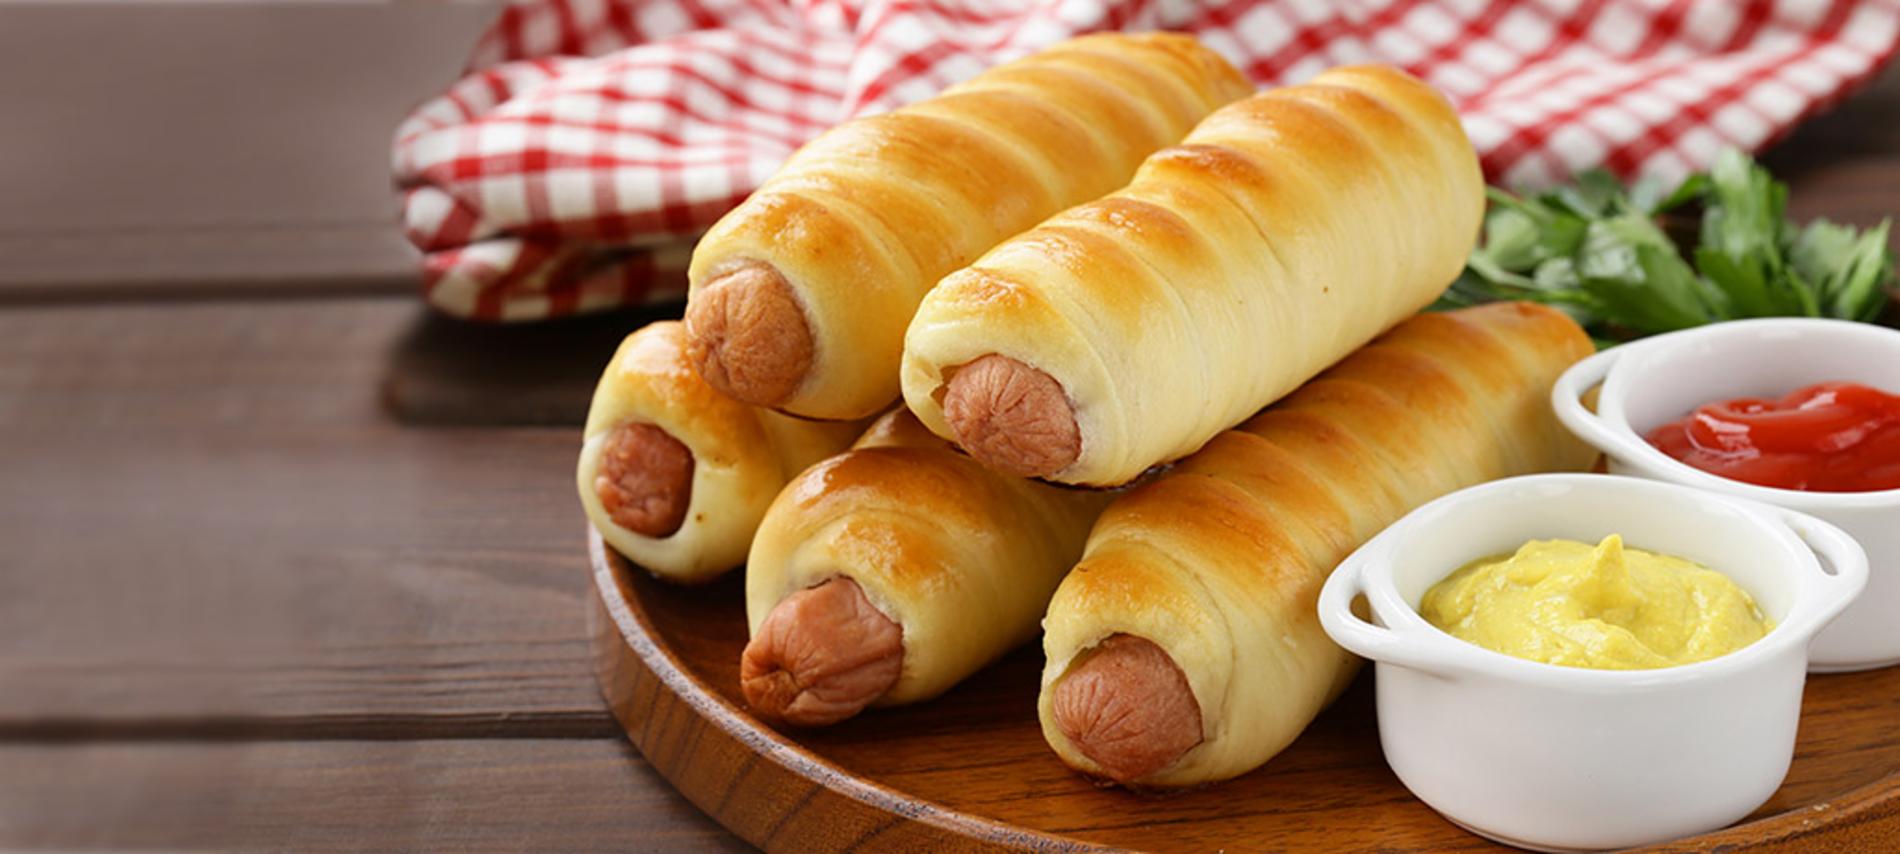 Receta de Rollitos de hot dog